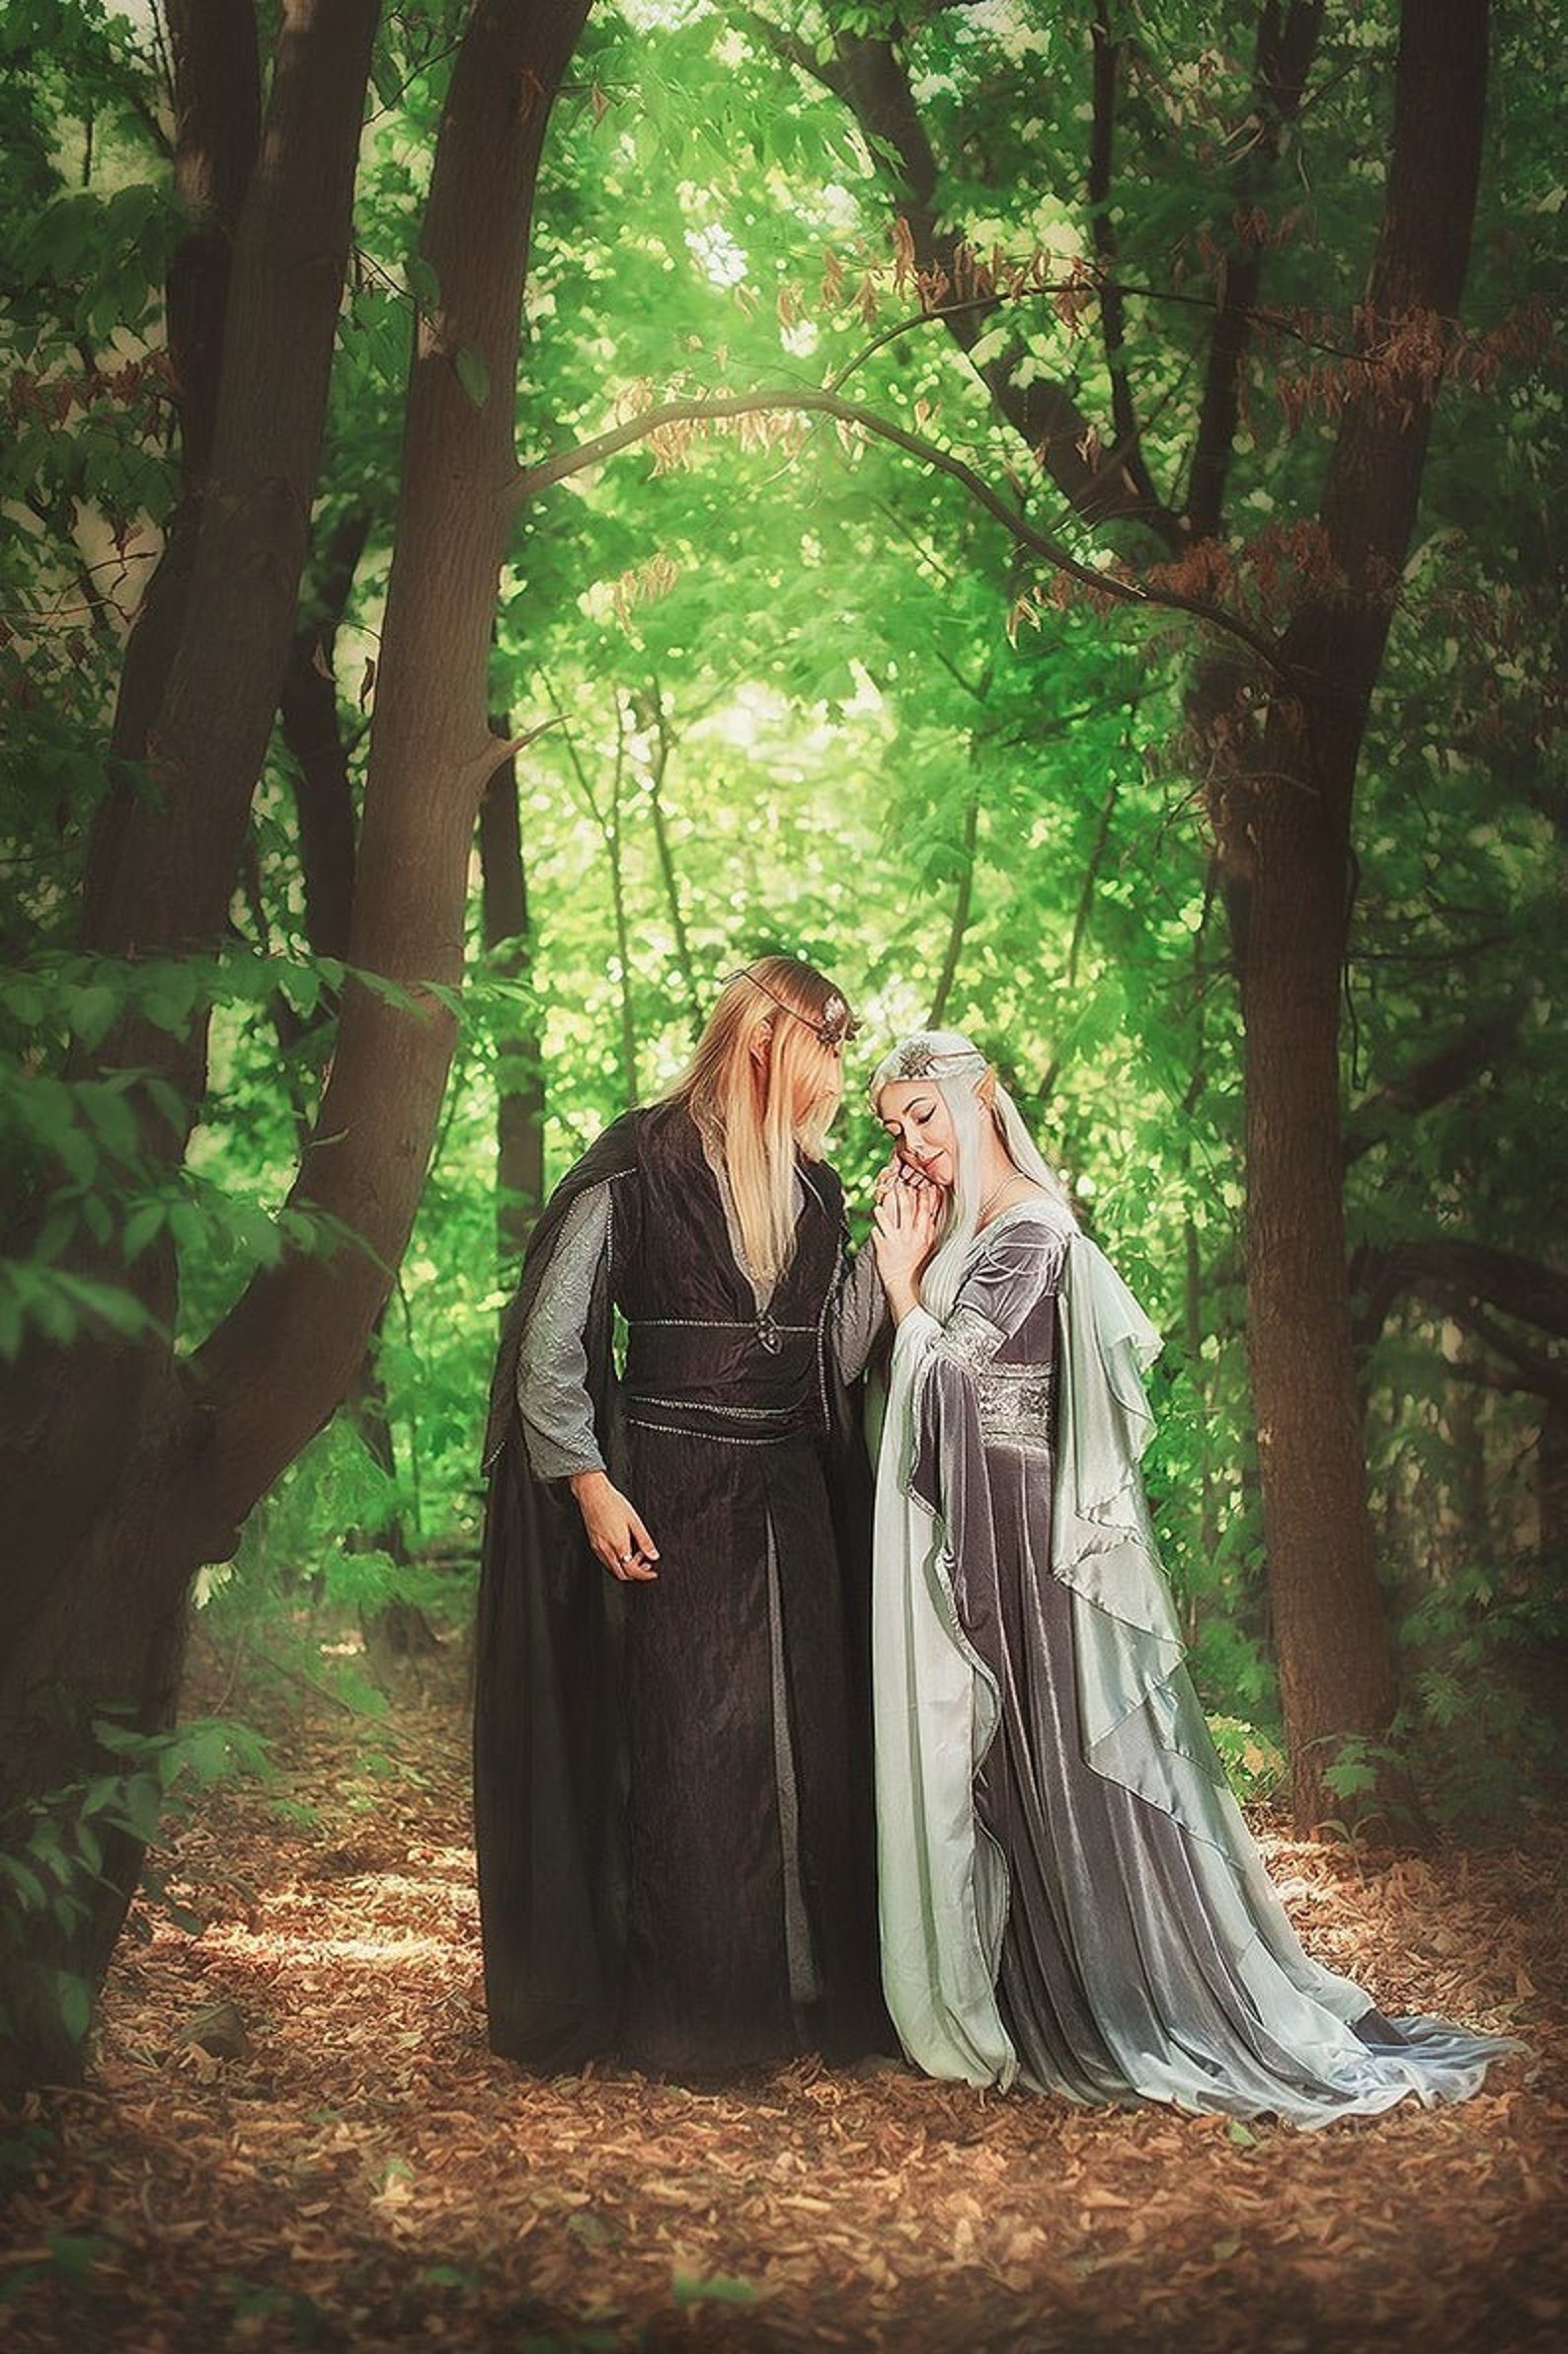 Как любить свою эльфийскую невесту